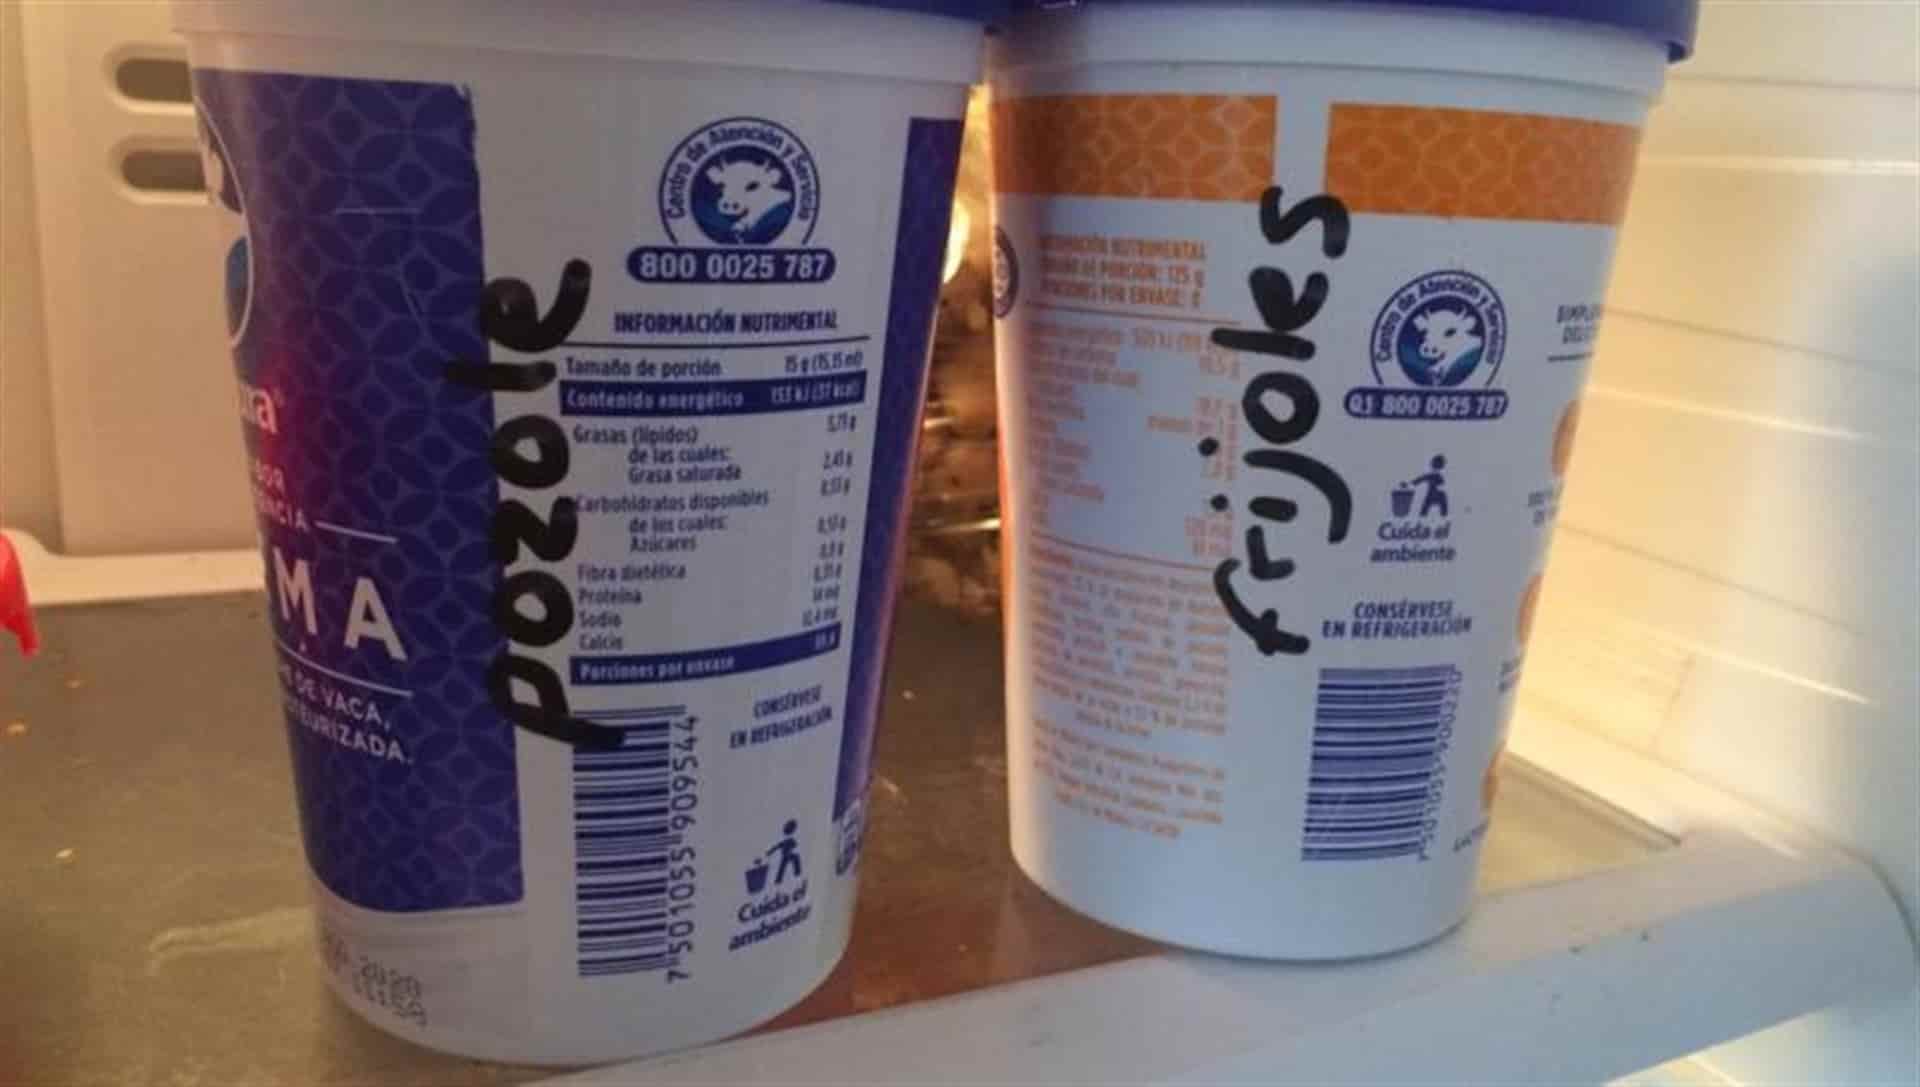 Advierten de daños por guardar comida en envases de yogurt o crema | Luz  Noticias